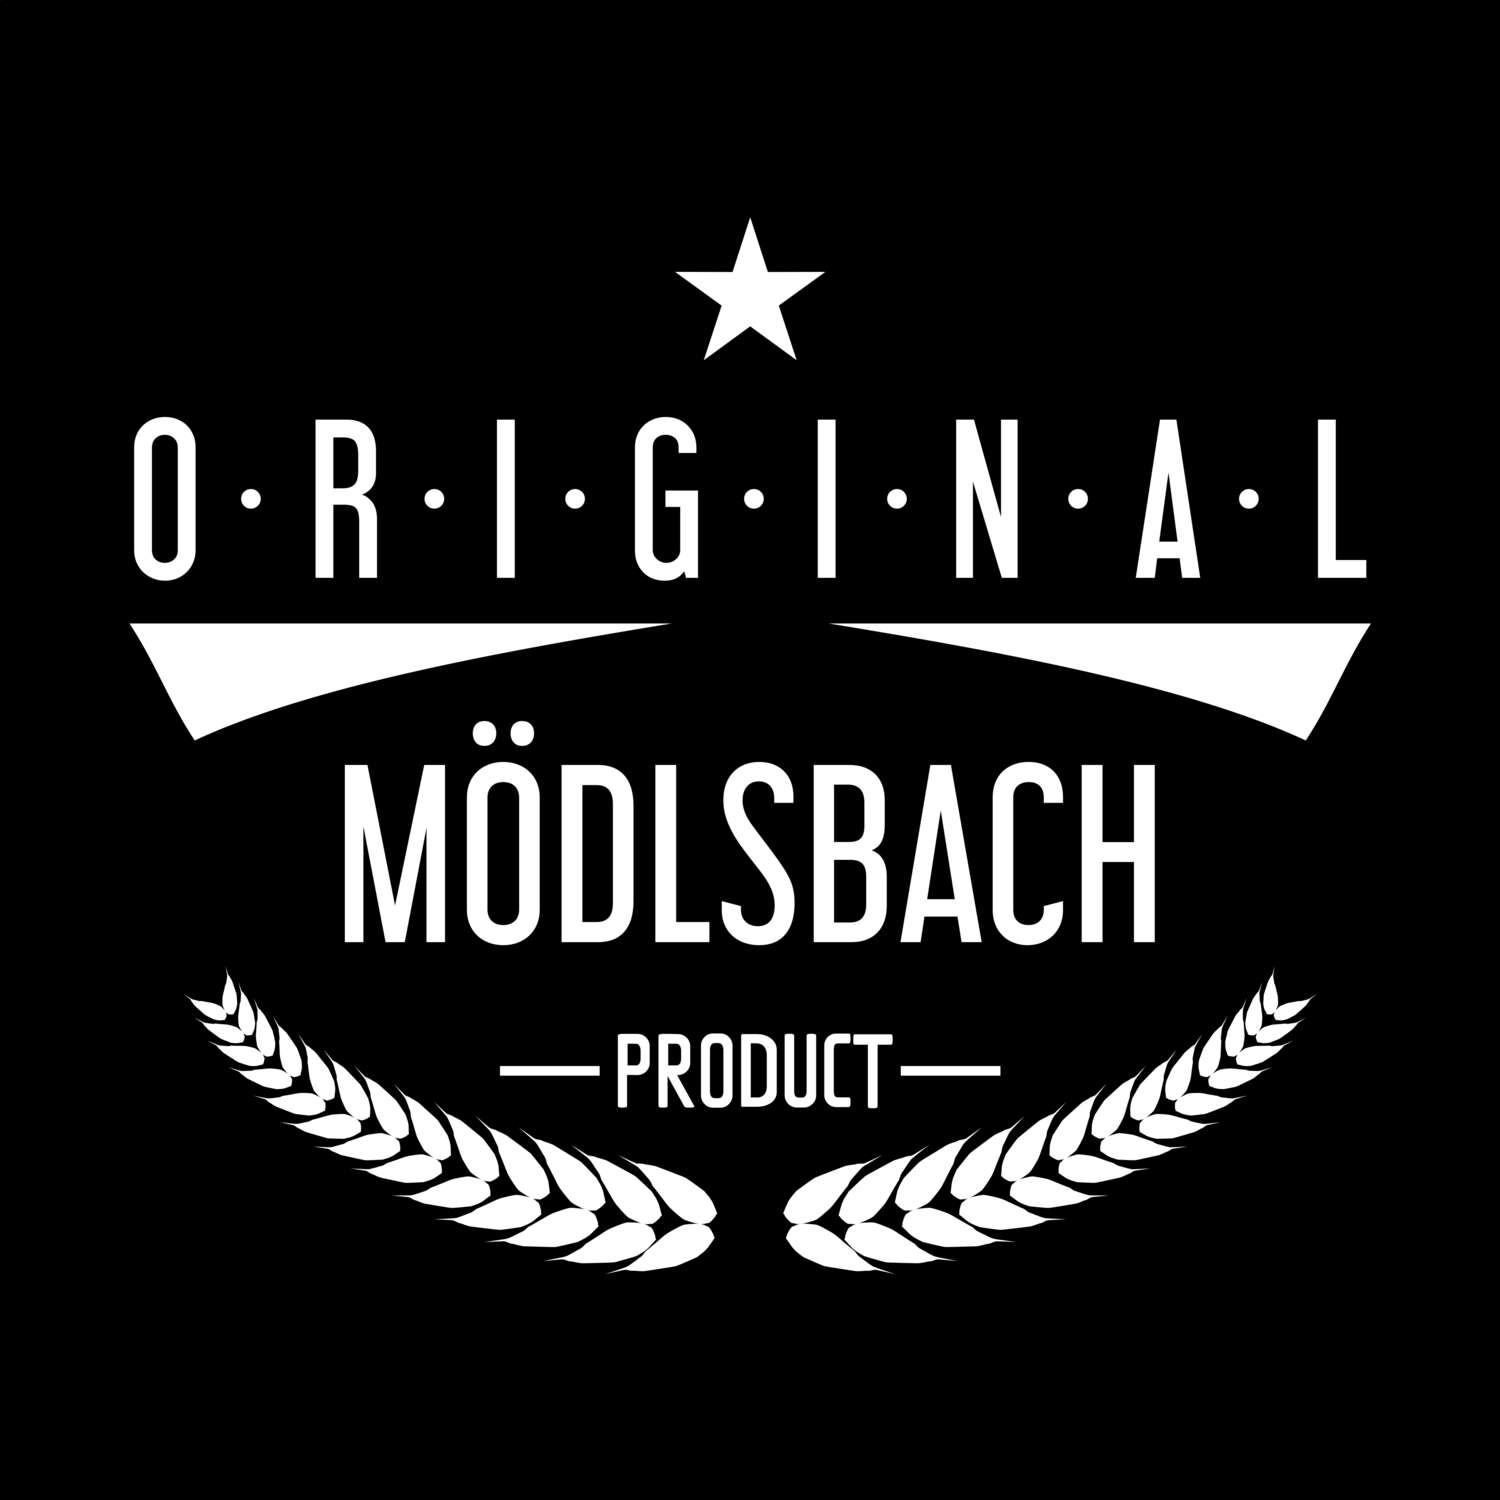 Mödlsbach T-Shirt »Original Product«